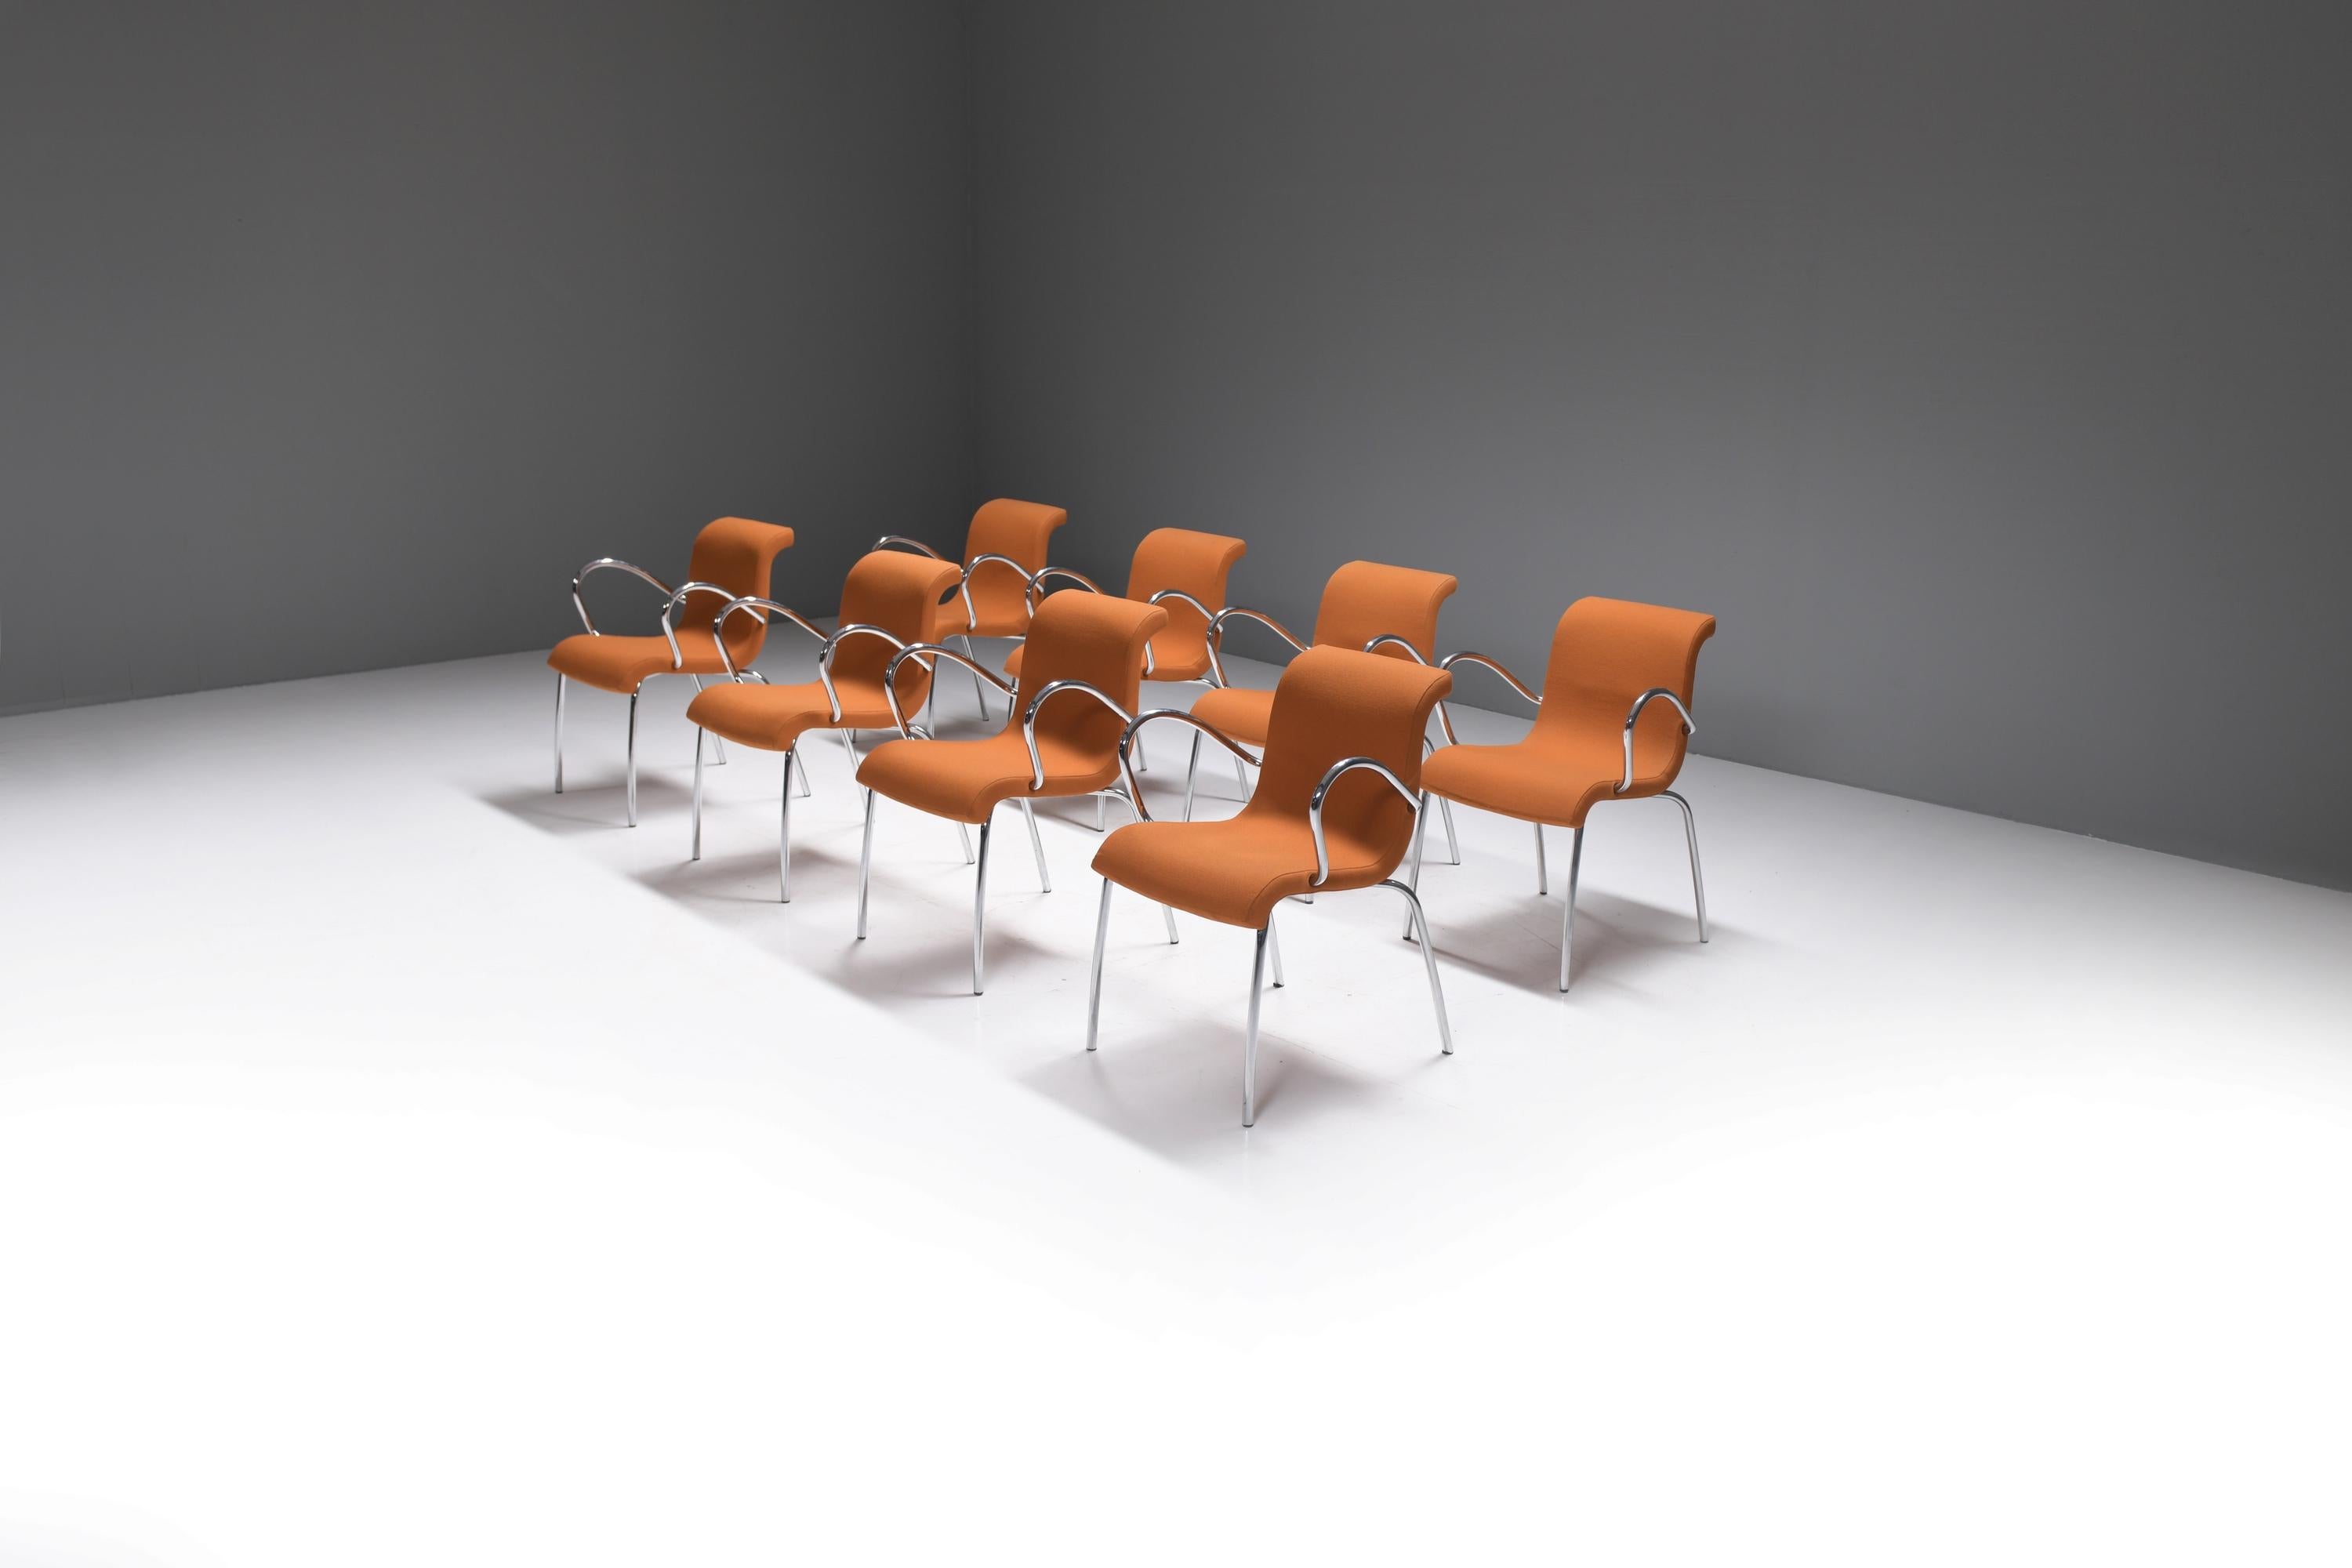 Superbe ensemble de fauteuils VLAG en tissu orange.  
Conçu et produit par le designer néerlandais Gerard van den Berg.

La chaise multifonctionnelle Vlag est fabriquée à l'image d'un drapeau flottant. Le mouvement apparaît encore clairement dans le